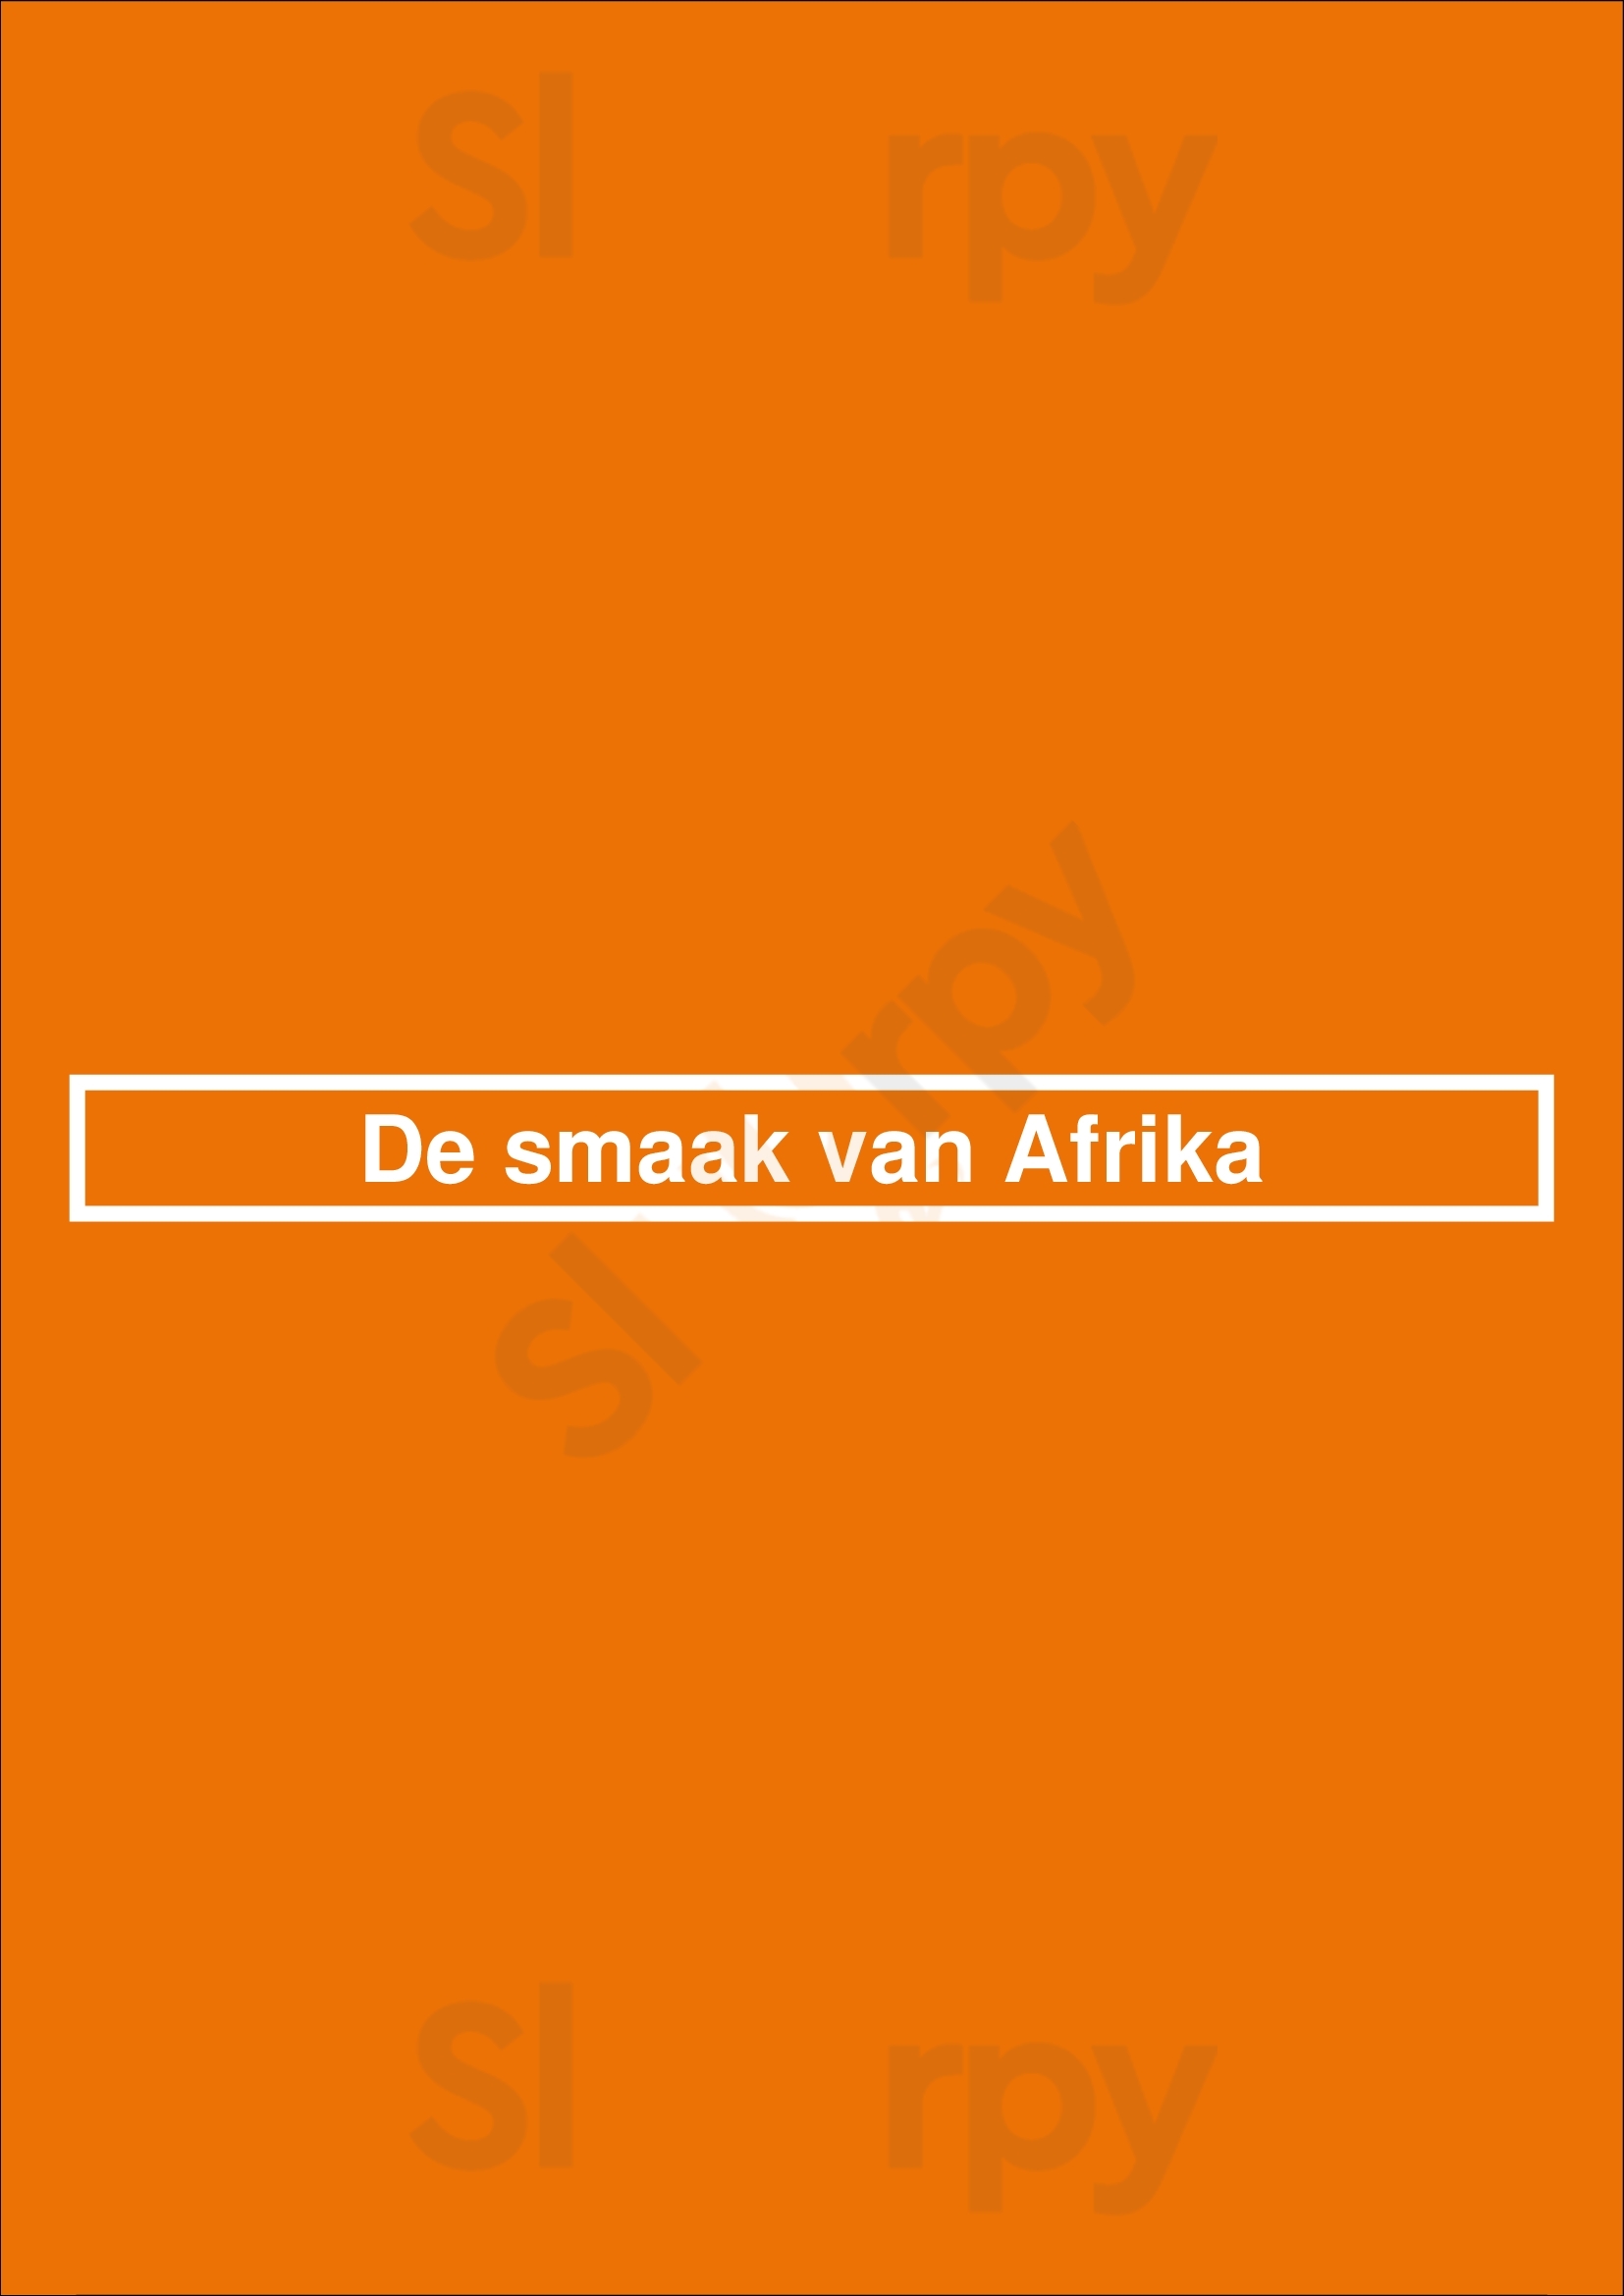 De Smaak Van Afrika Rotterdam Menu - 1